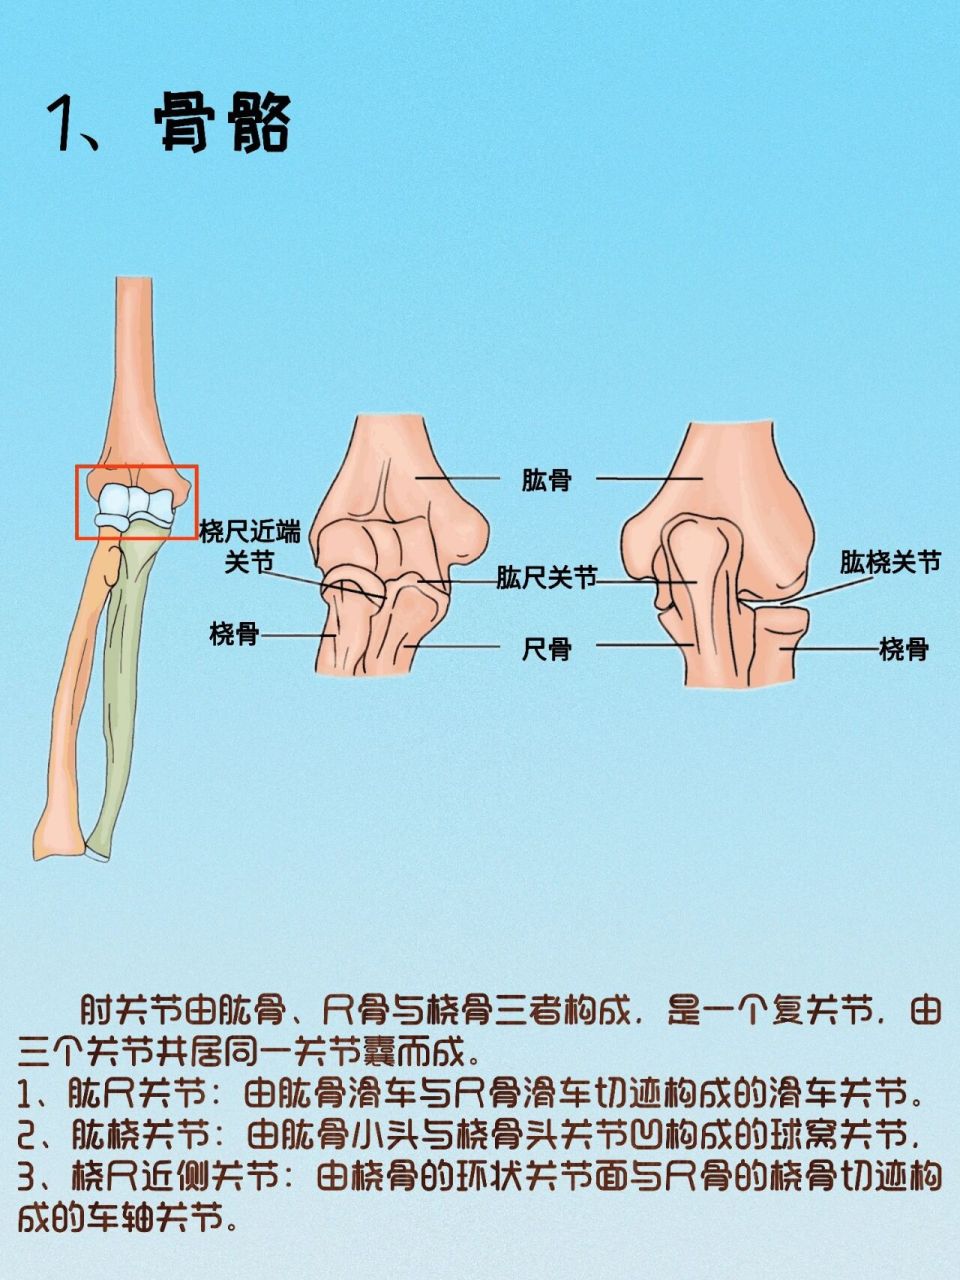 肱尺关节:由肱骨滑车与尺骨滑车切迹构成的滑车关节